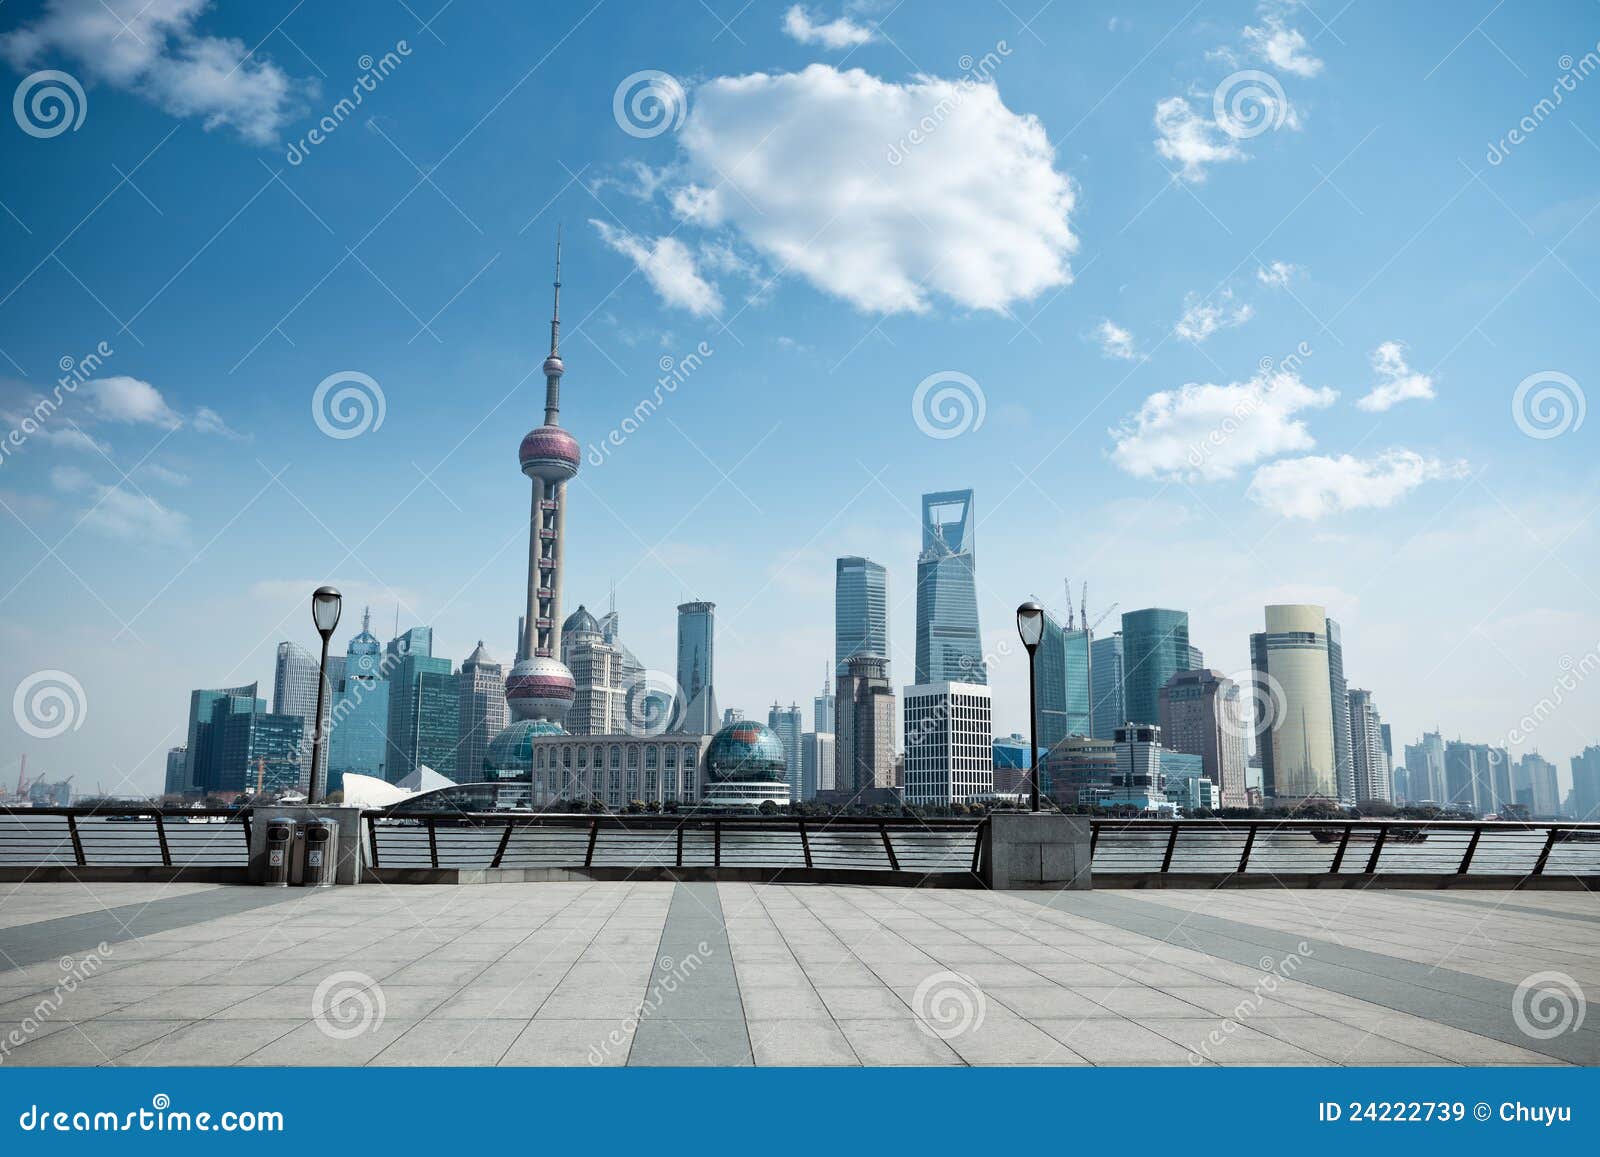 daytime scene of shanghai